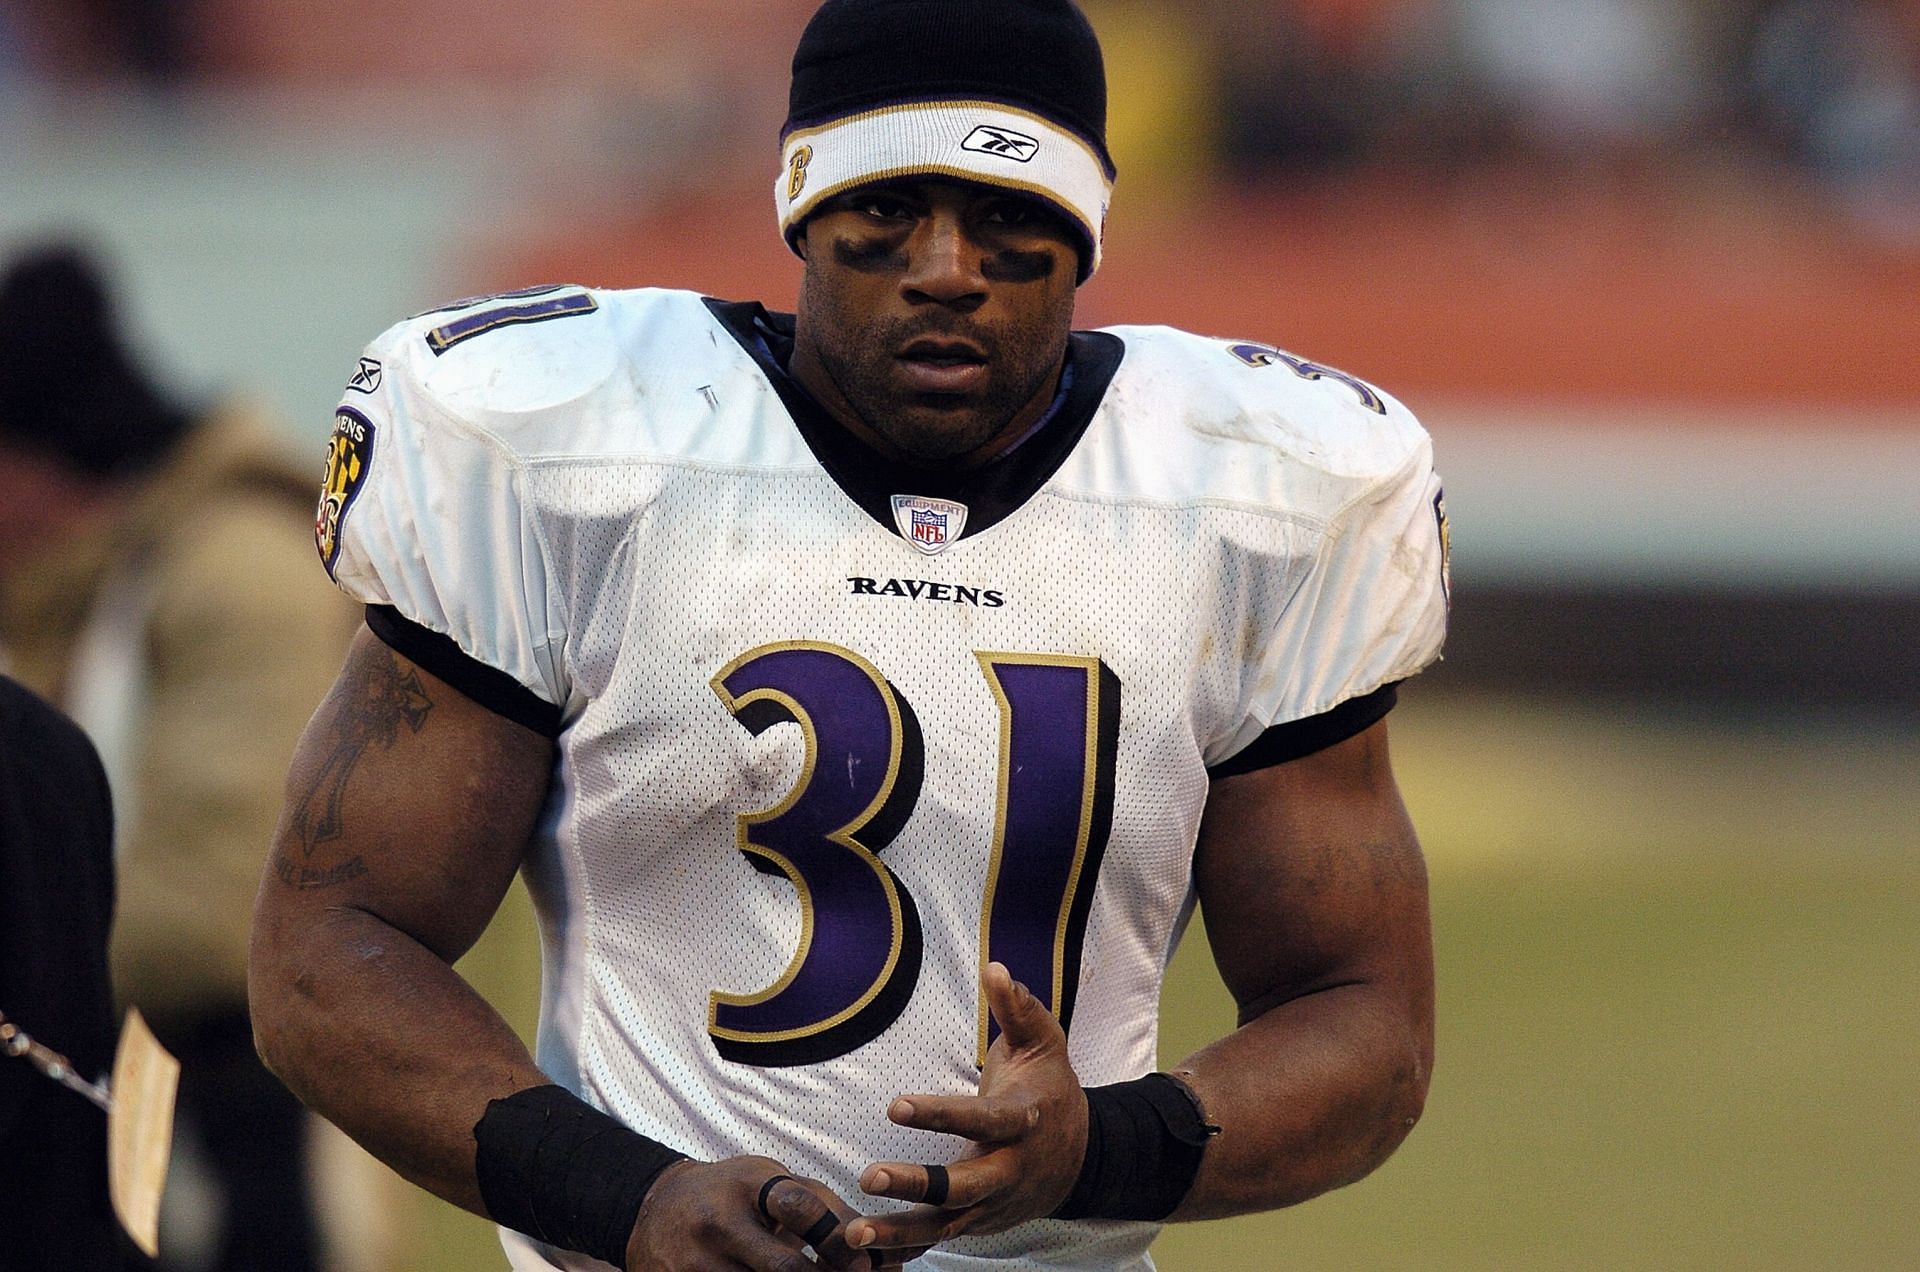 Baltimore Ravens running back Jamal Lewis